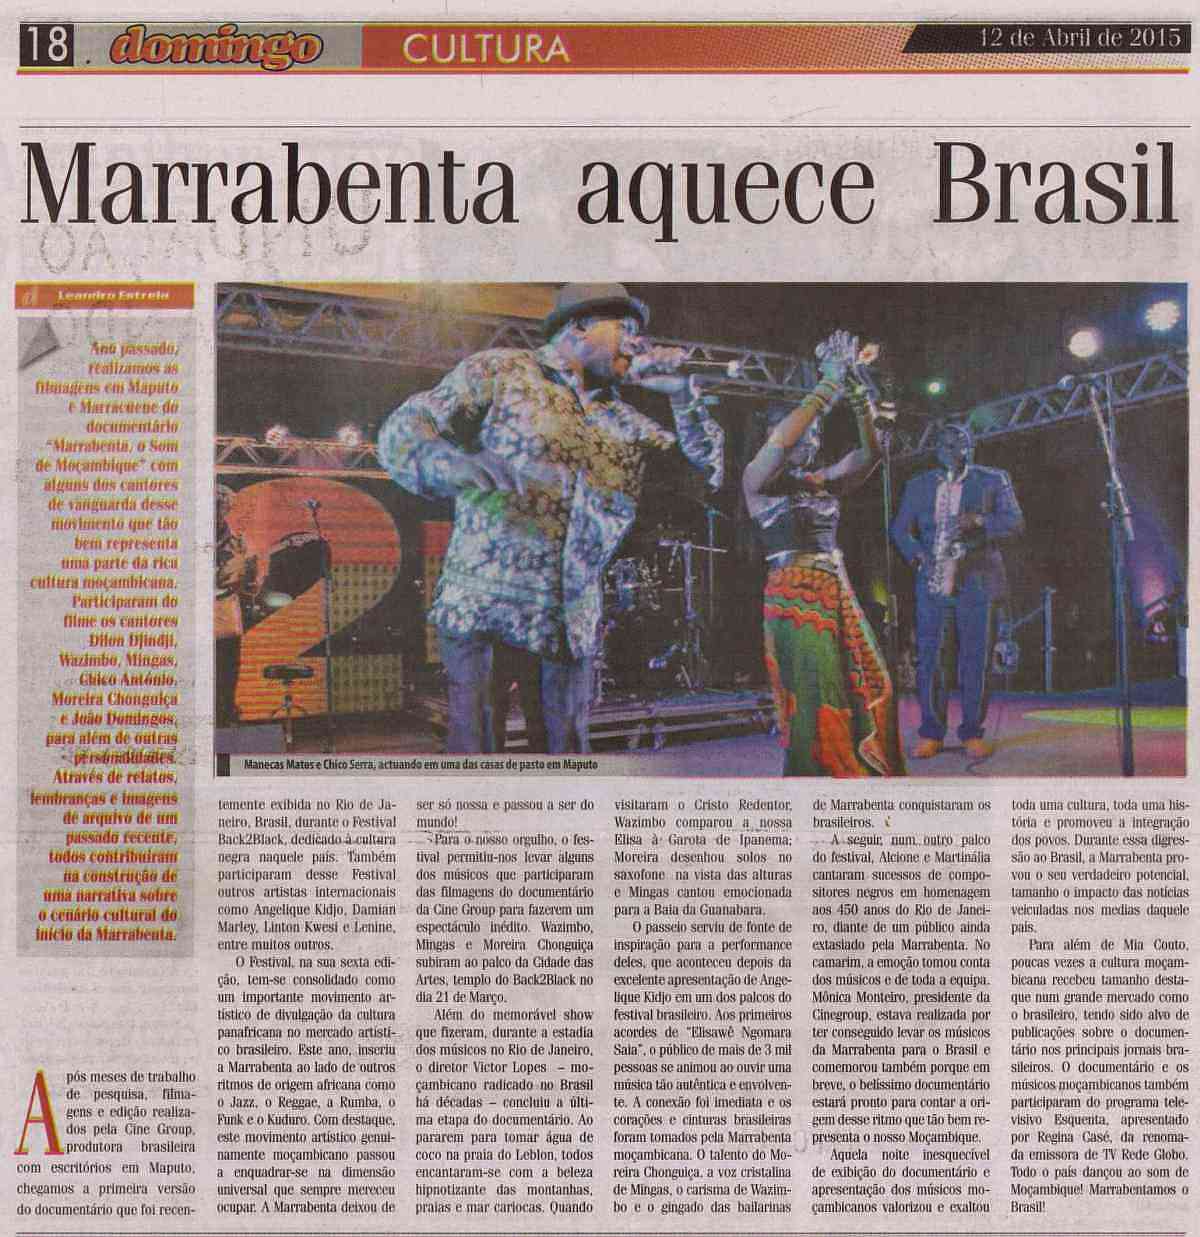 'Domingo - Cultura', April 12, 2015, Page 18: Mingas at Back2Black Festival in Rio de Janeiro, Brazil, March 21, 2015